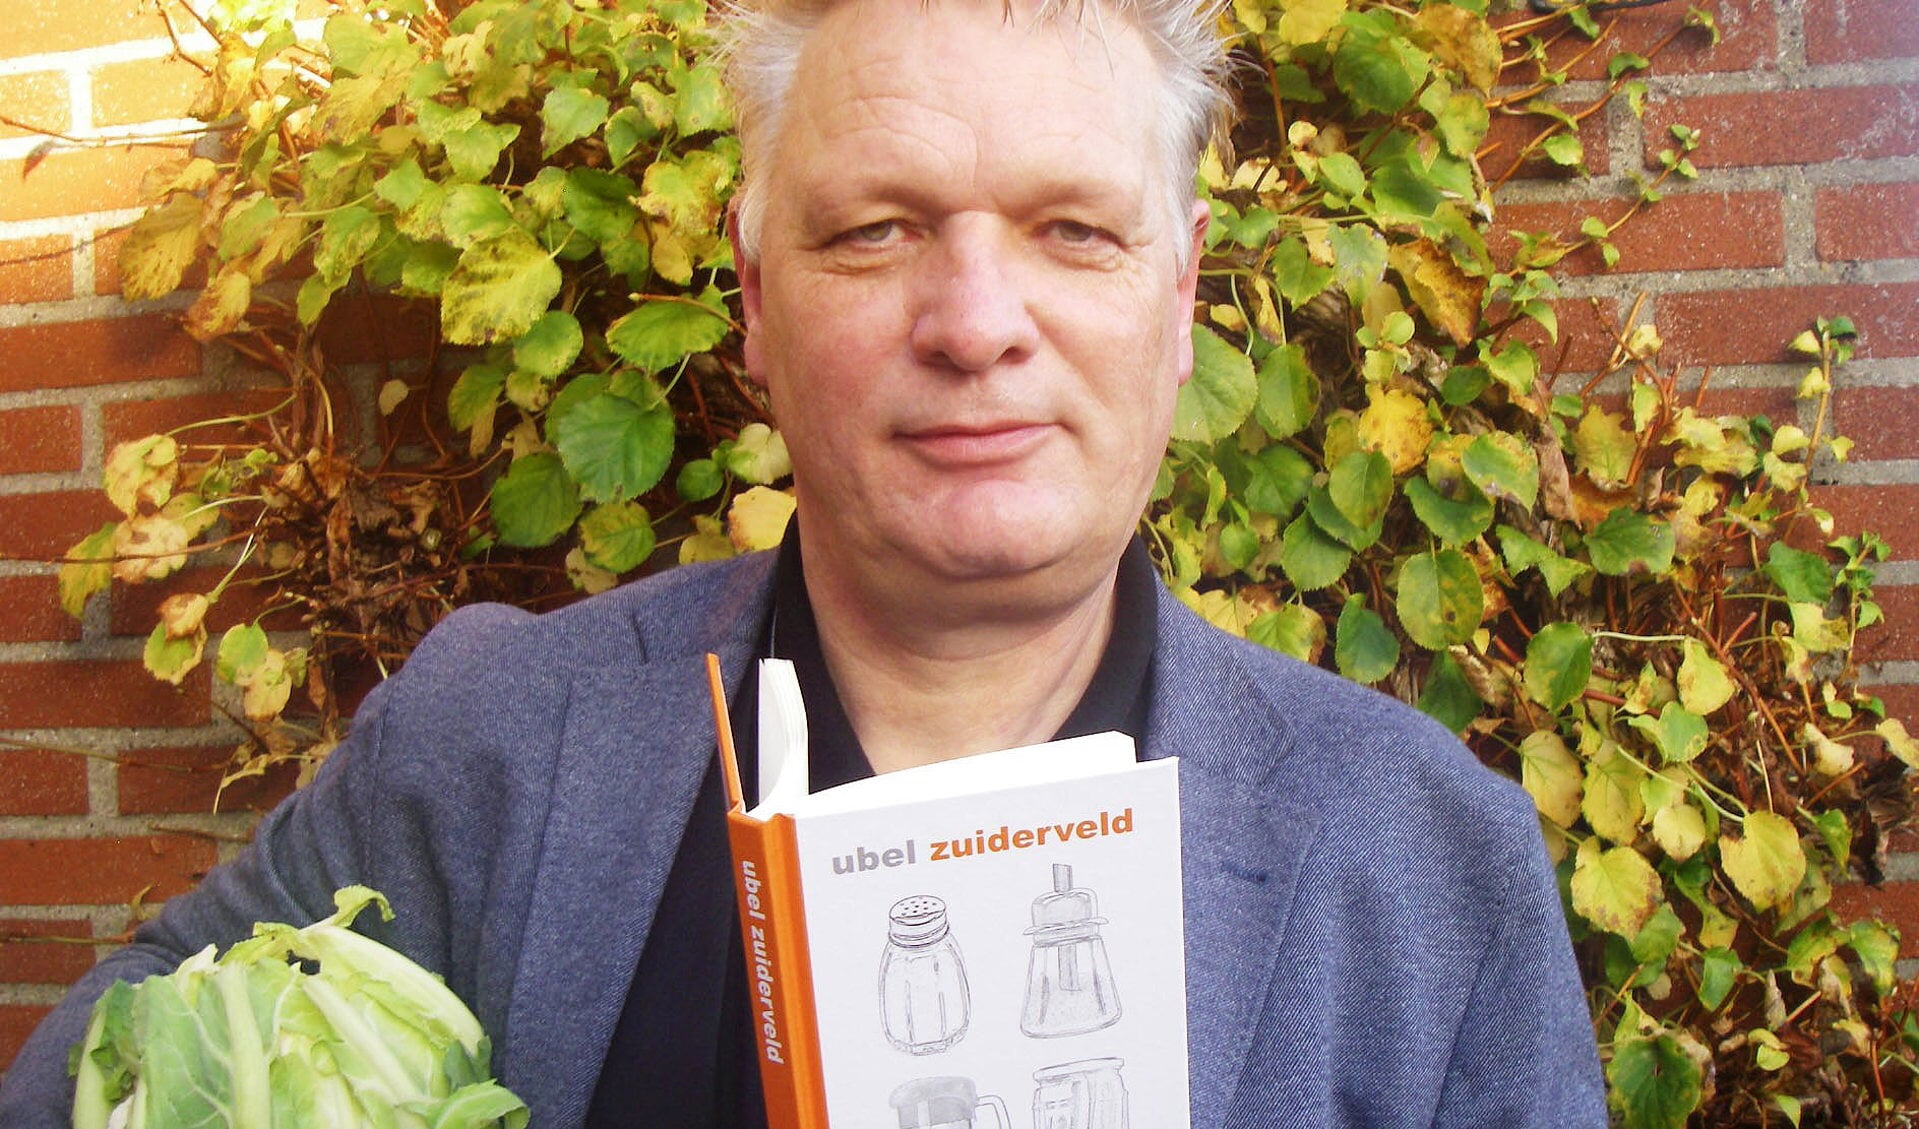 Ubel Zuiderveld met zijn nieuwe boek, en - passend - ook met iets eetbaars. Foto: Bernhard Harfsterkamp